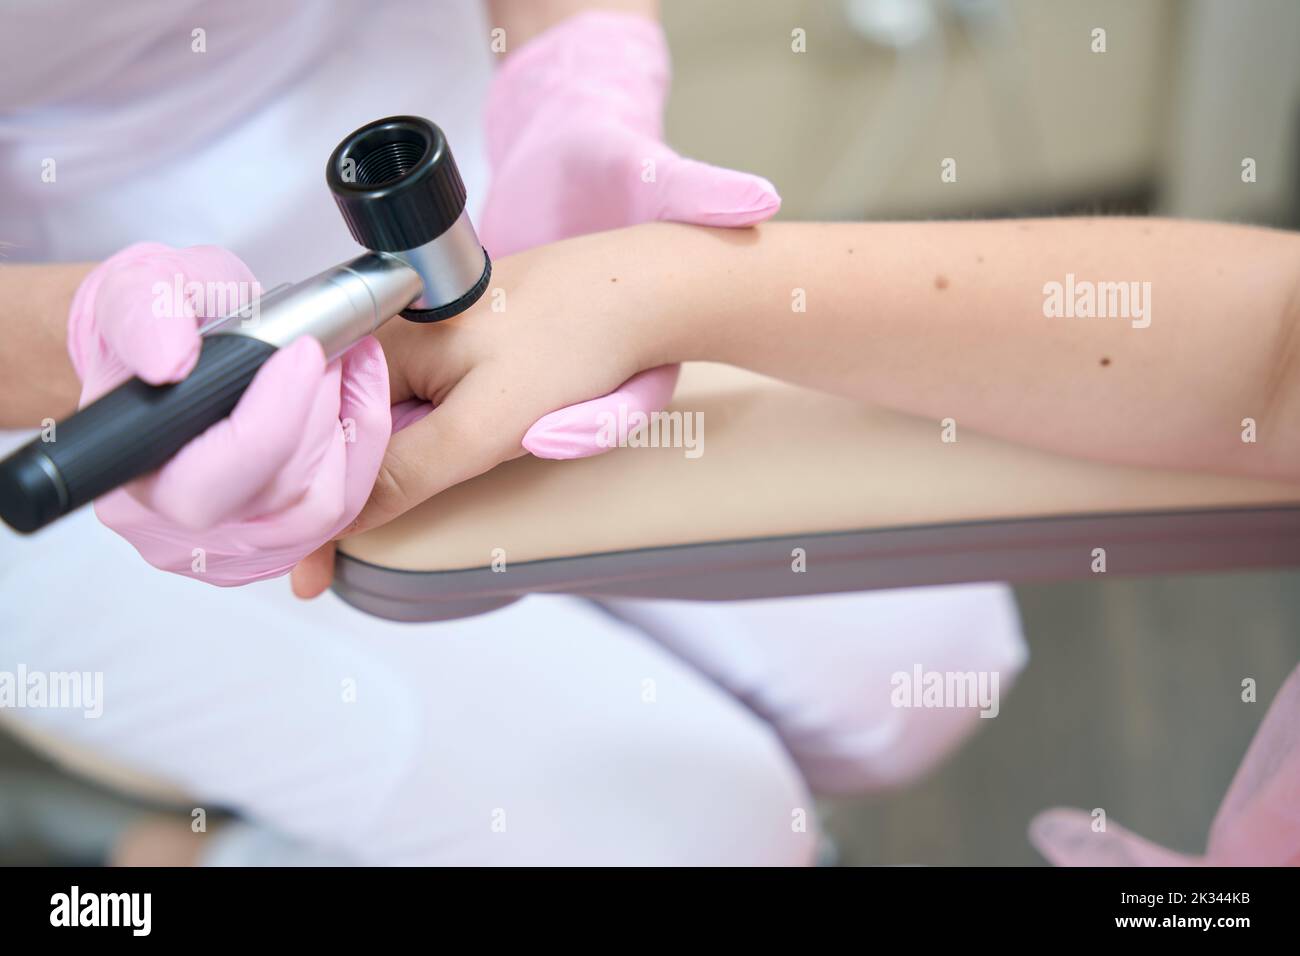 Le mani femminili del cosmetologist esaminano la mano del paziente con il dermatoscope Foto Stock